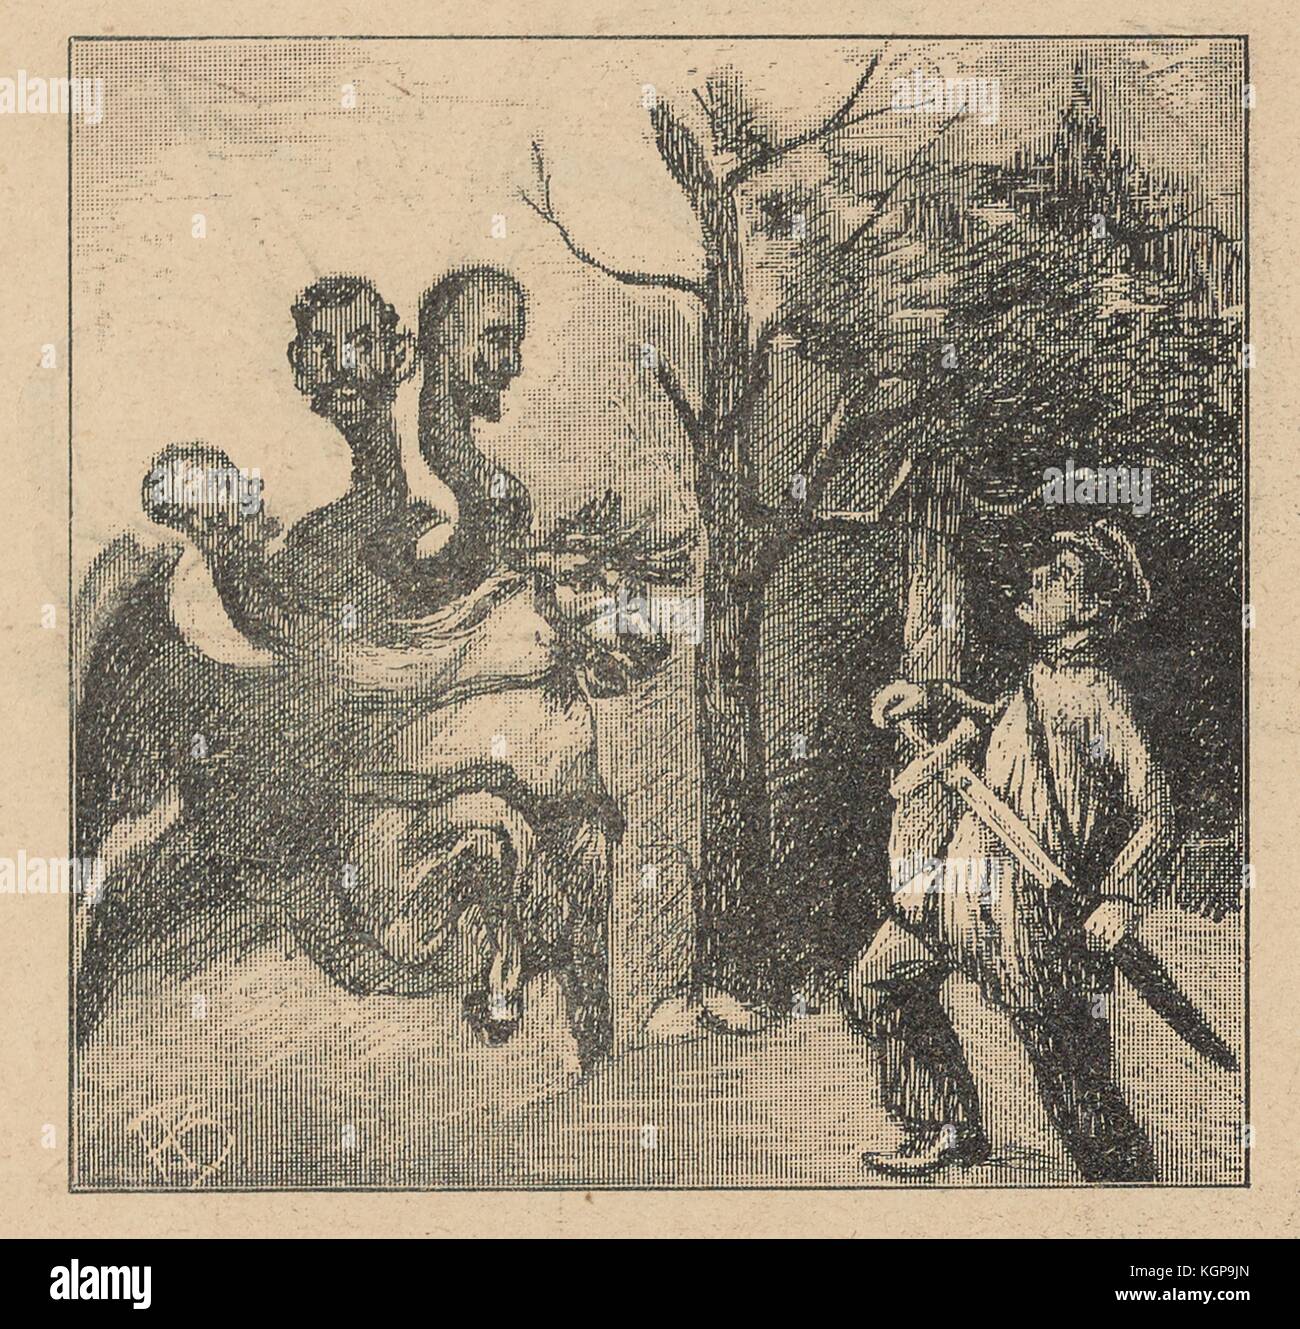 Cartone animato della rivista satirica russa Ovod (Gadfly) che raffigura un uomo che tira la spada fuori dal suo fodero mentre guarda sotto shock una creatura con tre teste umane che cavalca un'altra creatura mitica, 1906. () Foto Stock